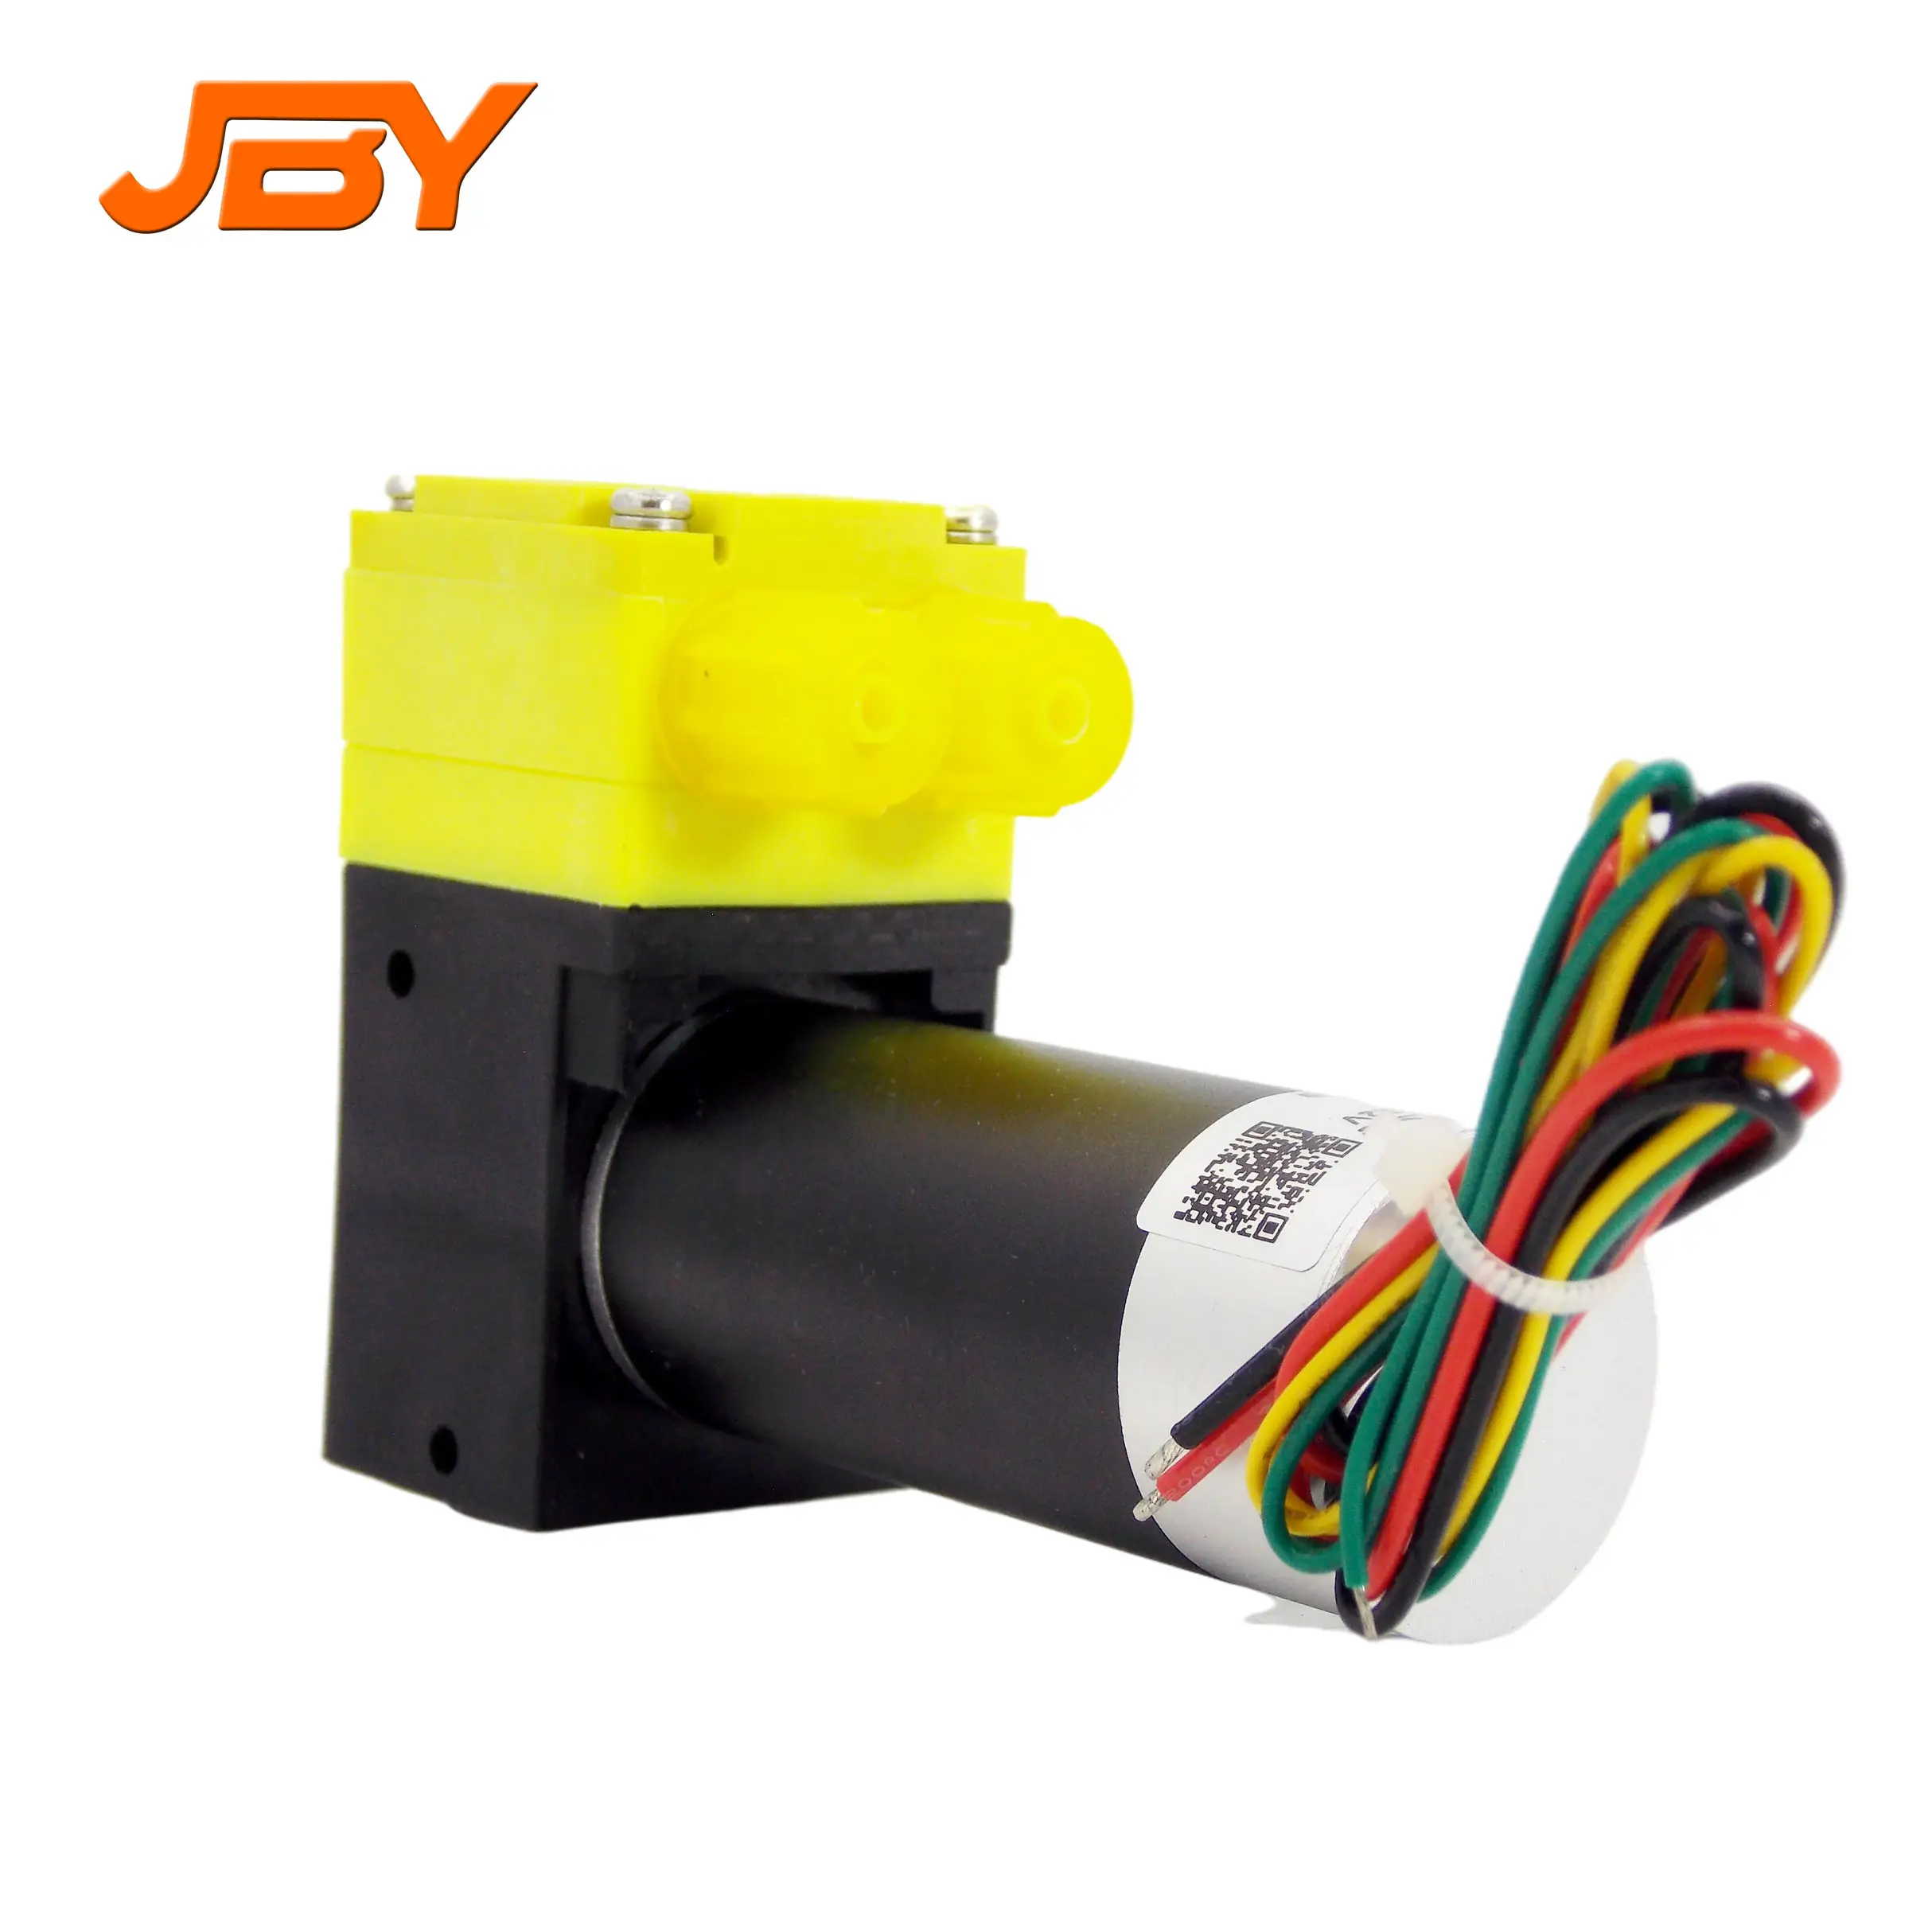 JBY-BP1000C 12 वी/24 वी डीसी माइक्रो सॉल्वेंट ट्रांसफर पंप तरल नमूना स्थानांतरण भरने के लिए उपयोग किया जाता है